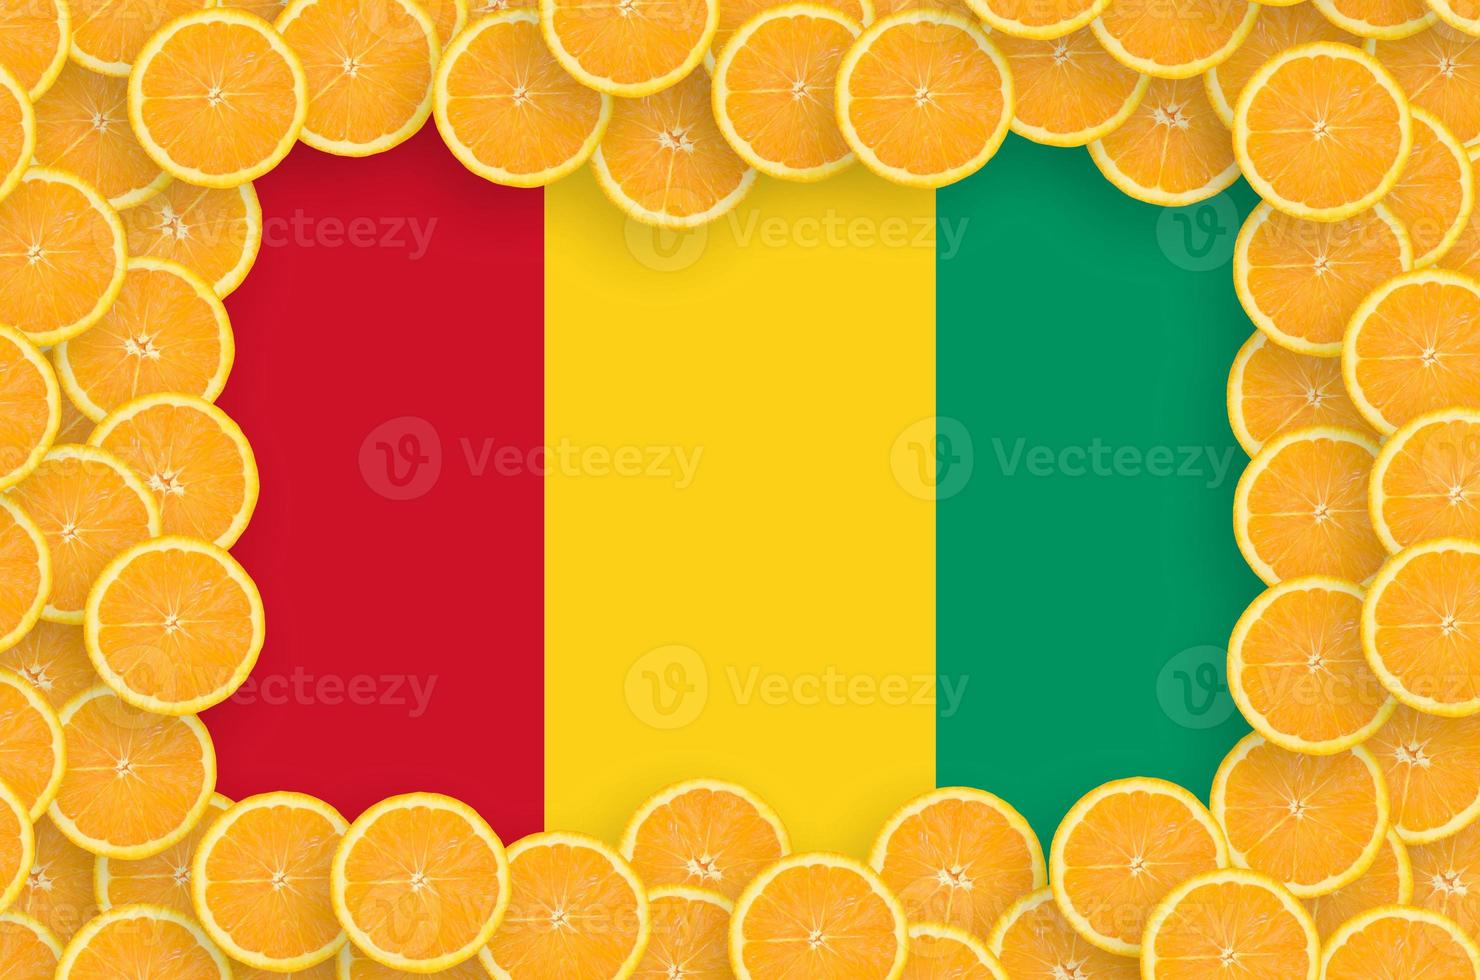 Guinea flag in fresh citrus fruit slices frame photo